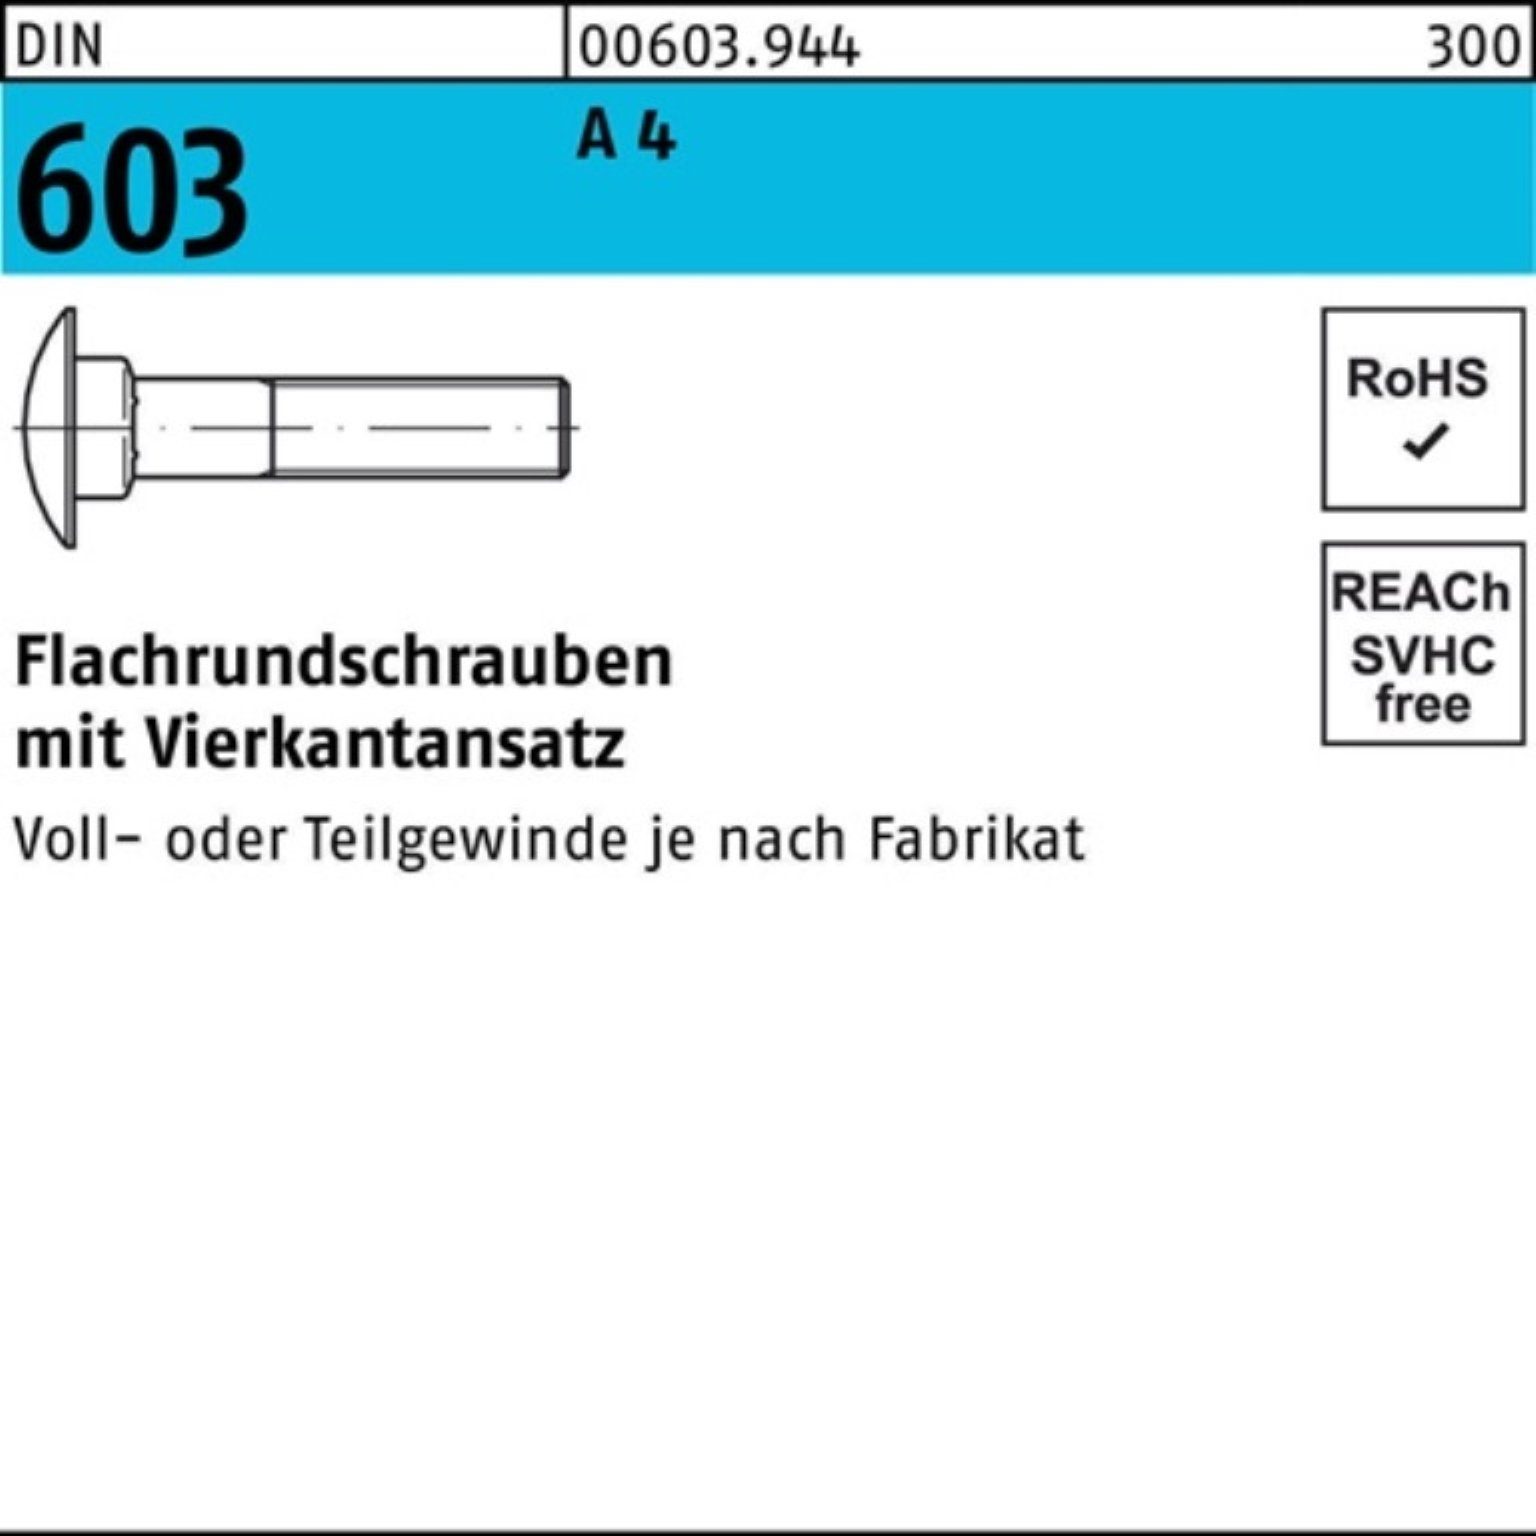 Reyher Schraube 100er Pack Flachrundschraube DIN 603 Vierkantansatz M10x 90 A 4 1 Stü